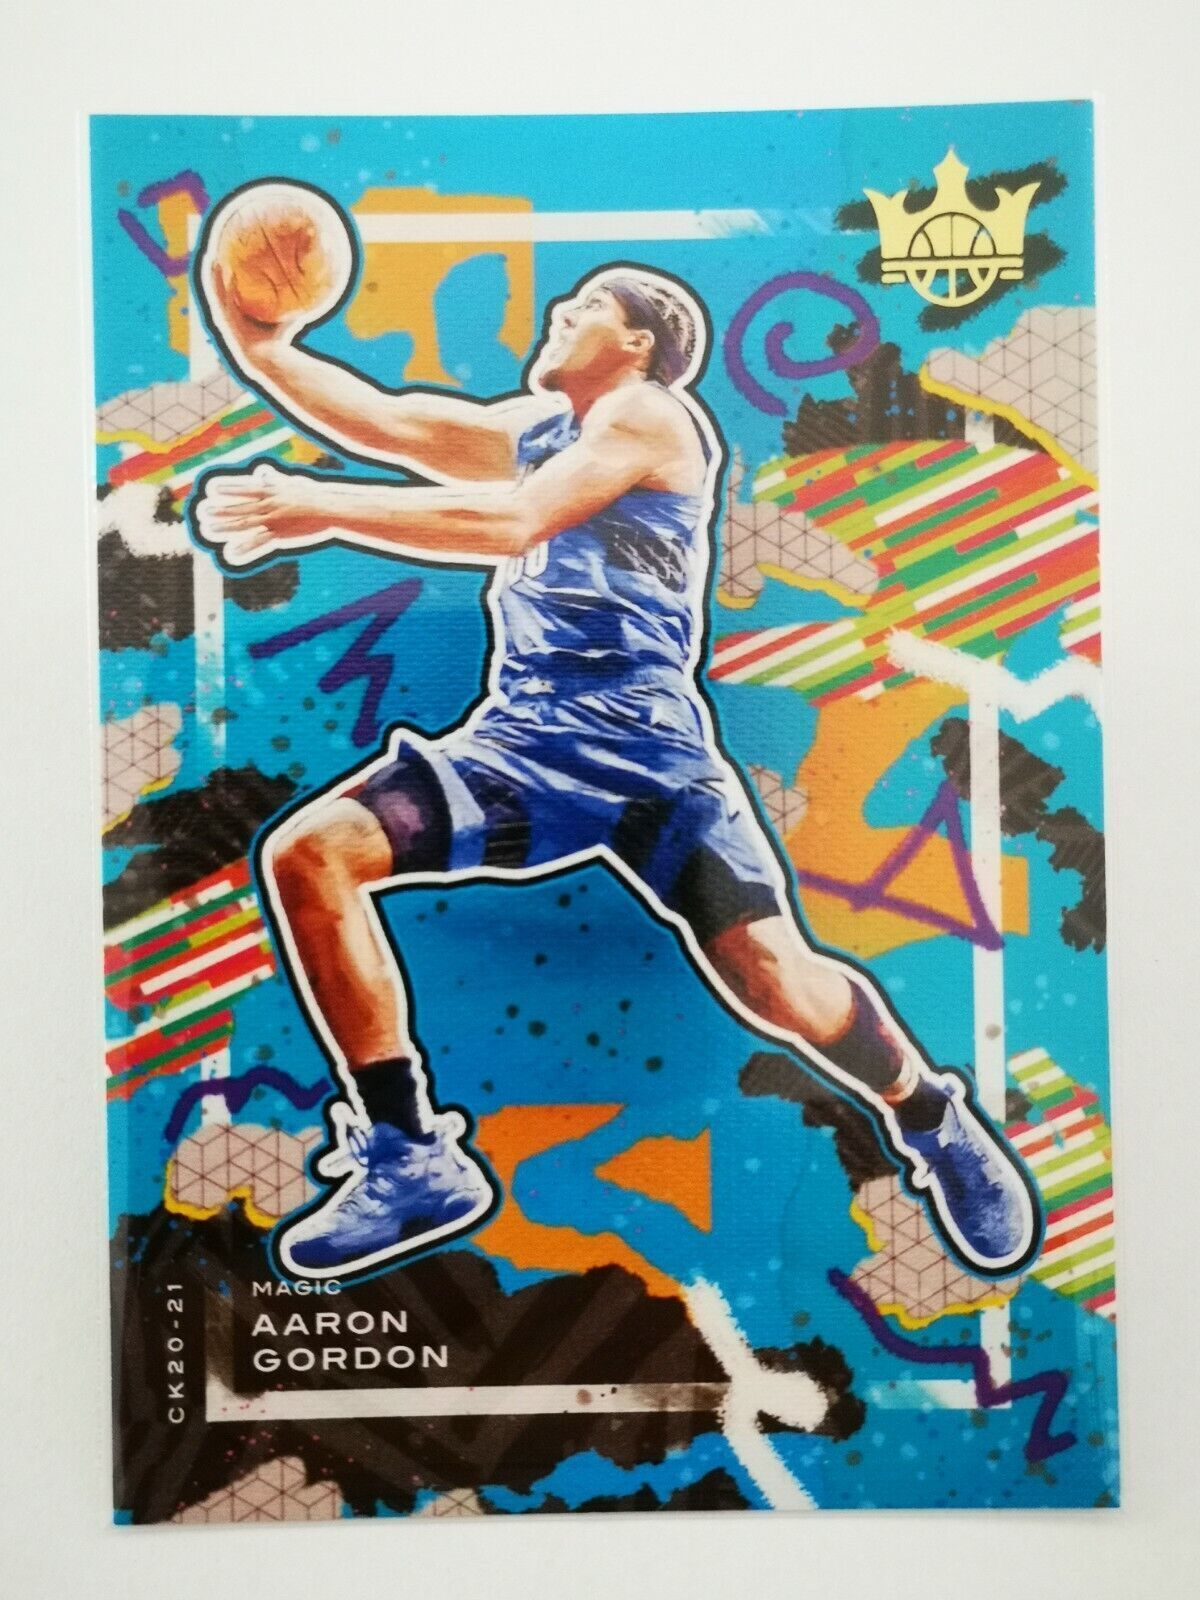 Panini Court Kings 2020-21 N30 NBA card Aaron Gordon #64 Orlando Magic